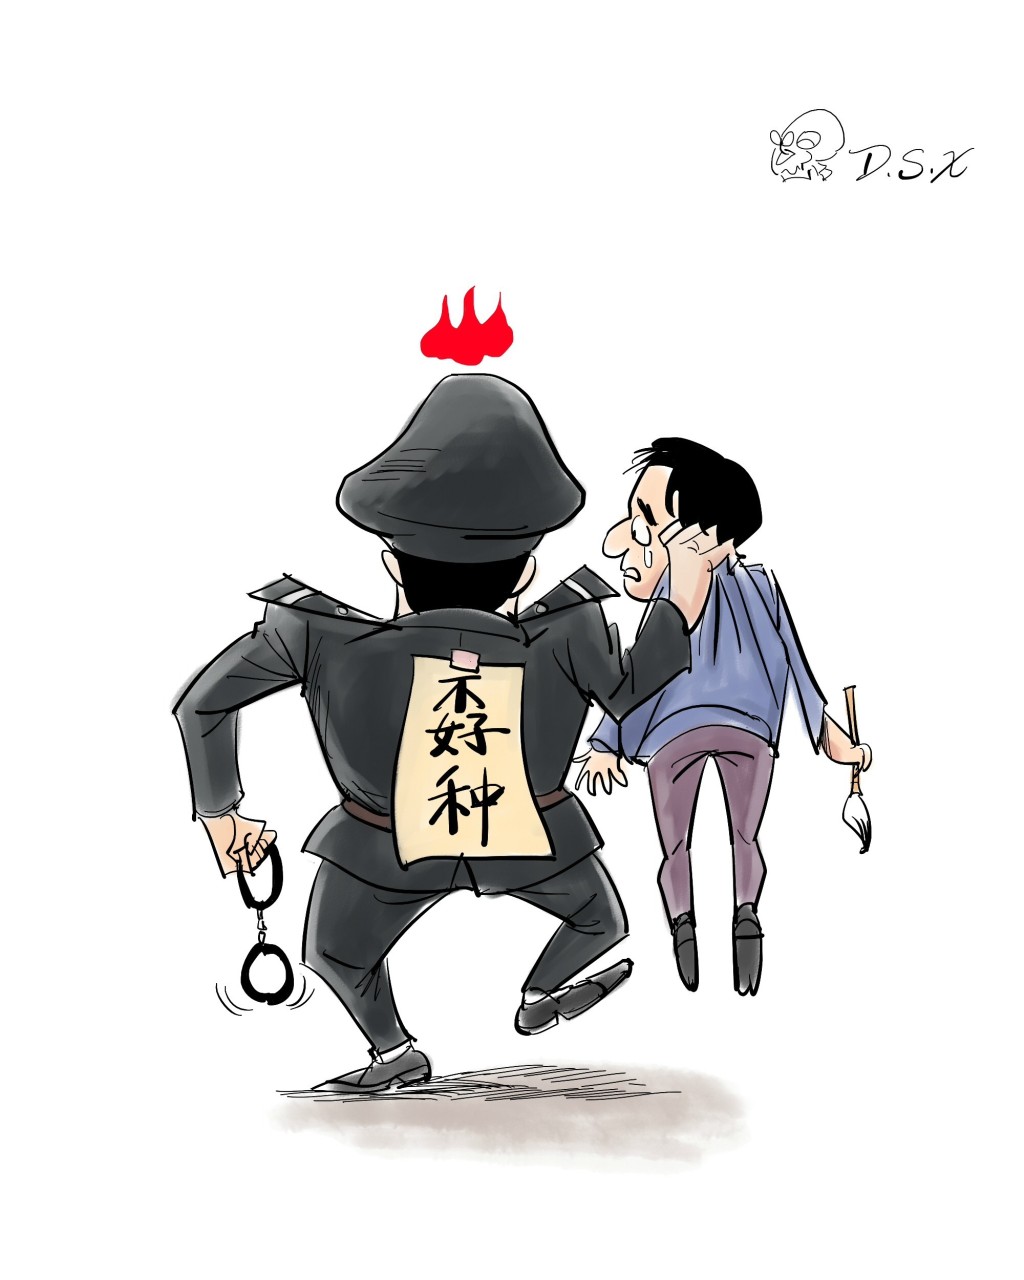 财经网 | 河南南阳两交警抢开罚单引争执